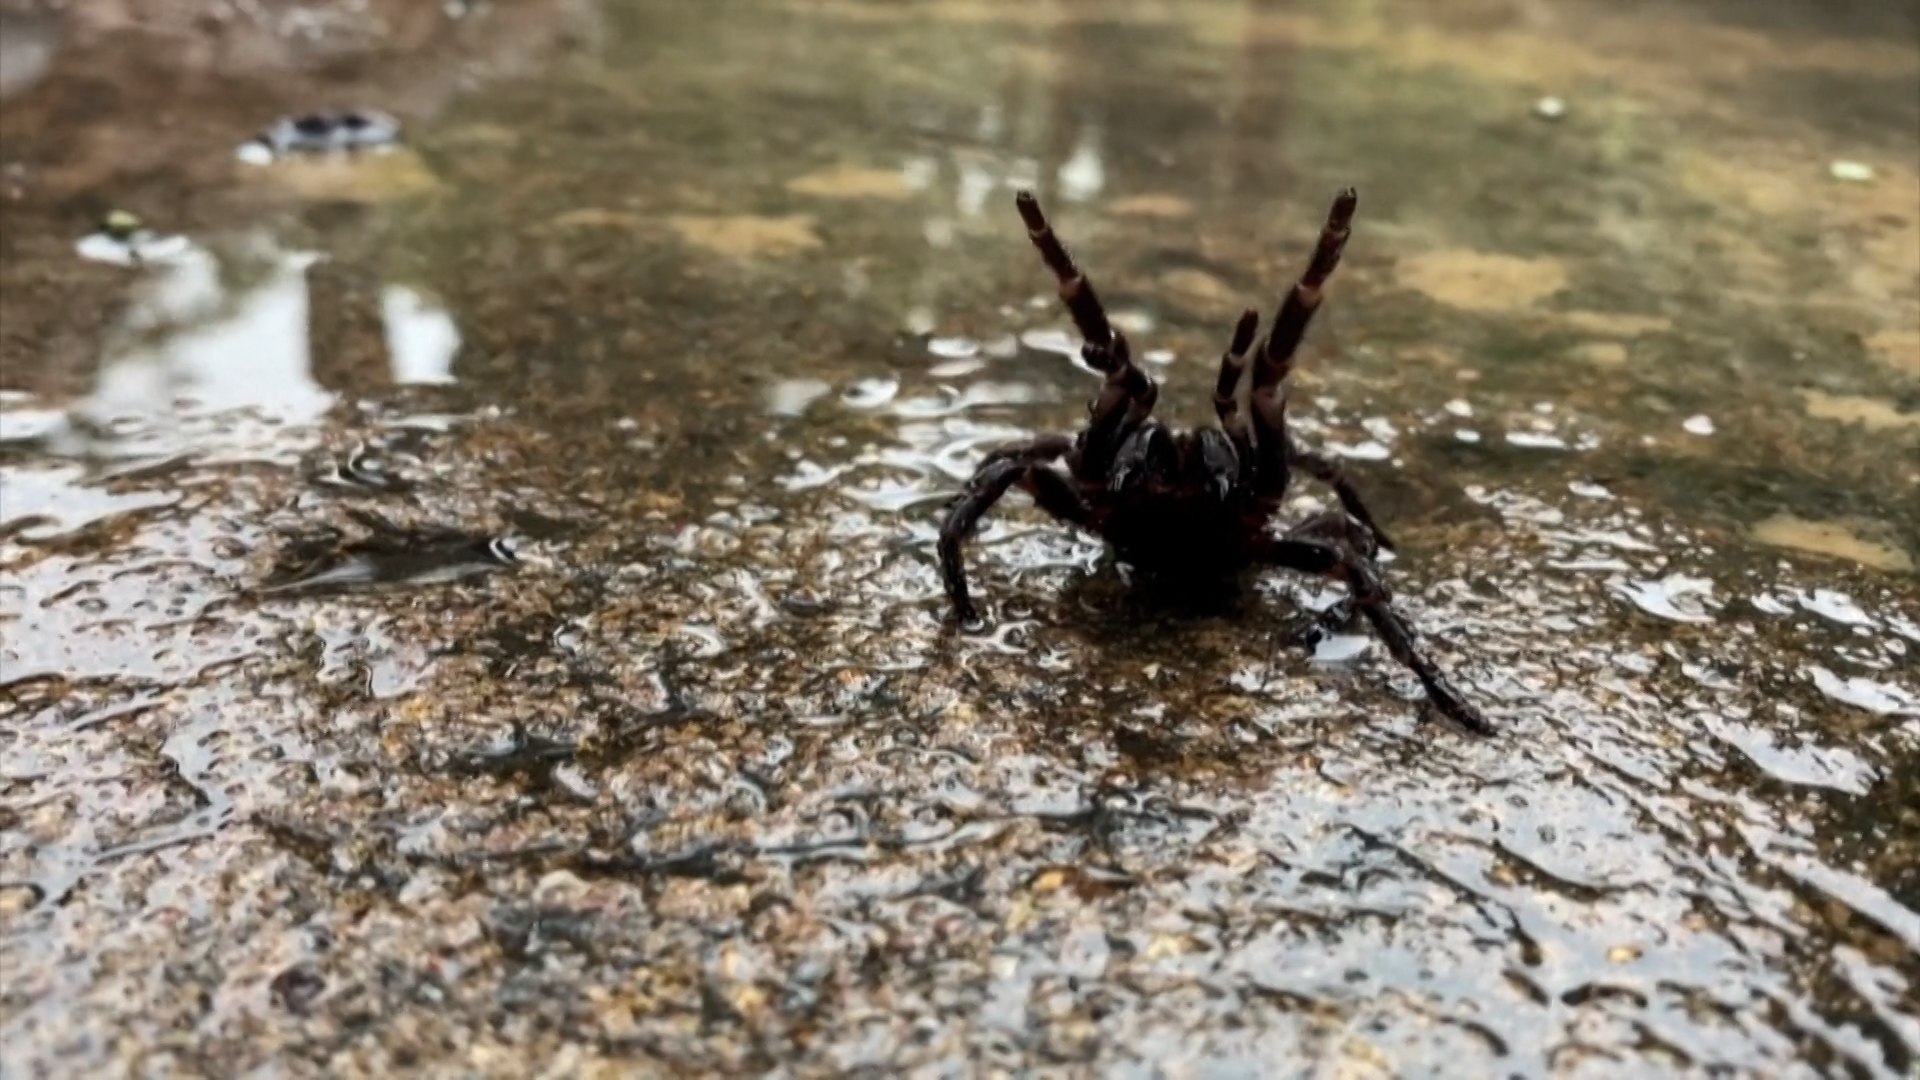 Australien warnt vor "Plage" der giftigsten Spinne der Welt - video  Dailymotion